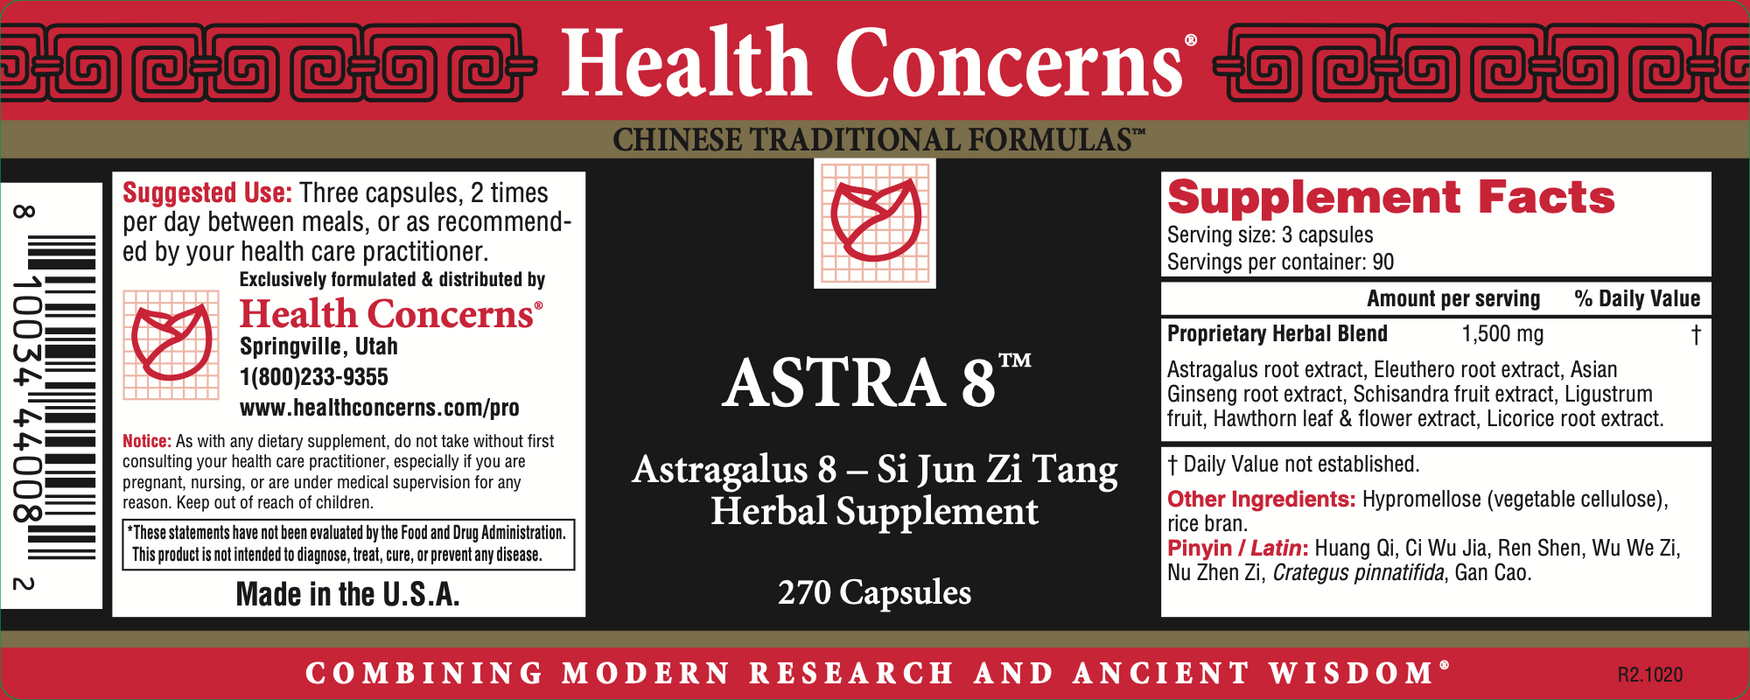 Health Concerns - Astra 8 - 